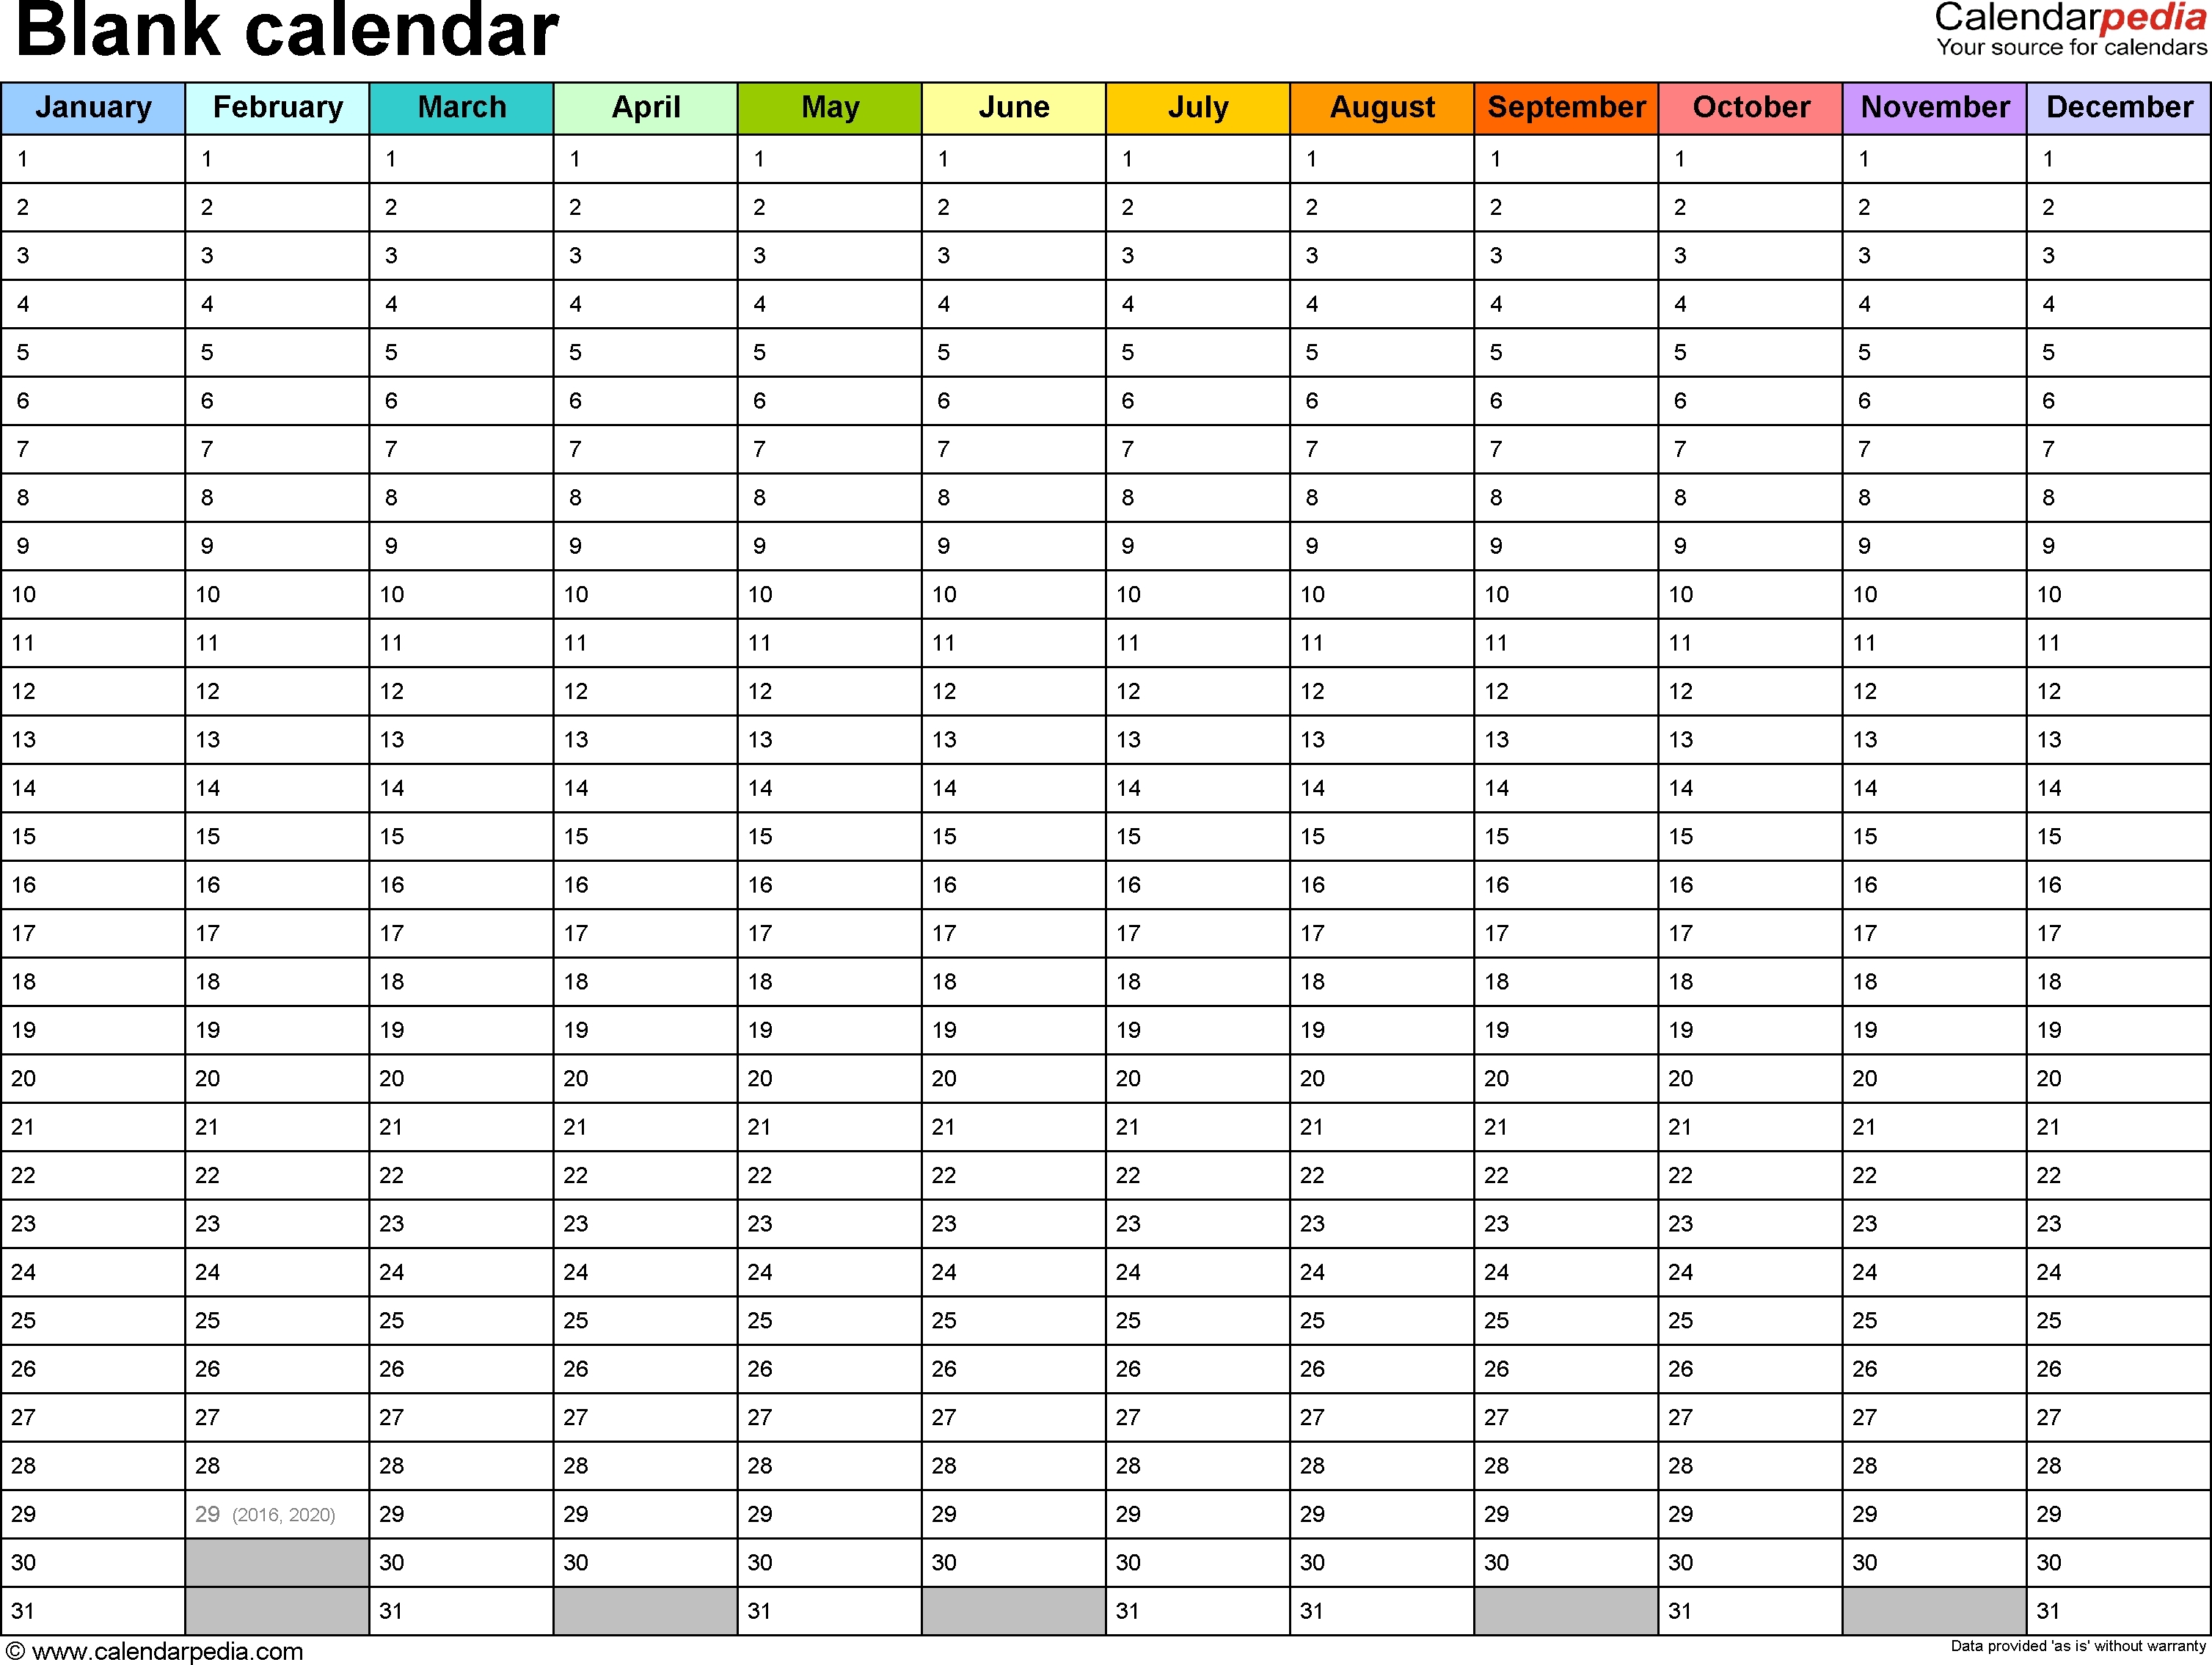 6-week-blank-calendar-template-template-calendar-design